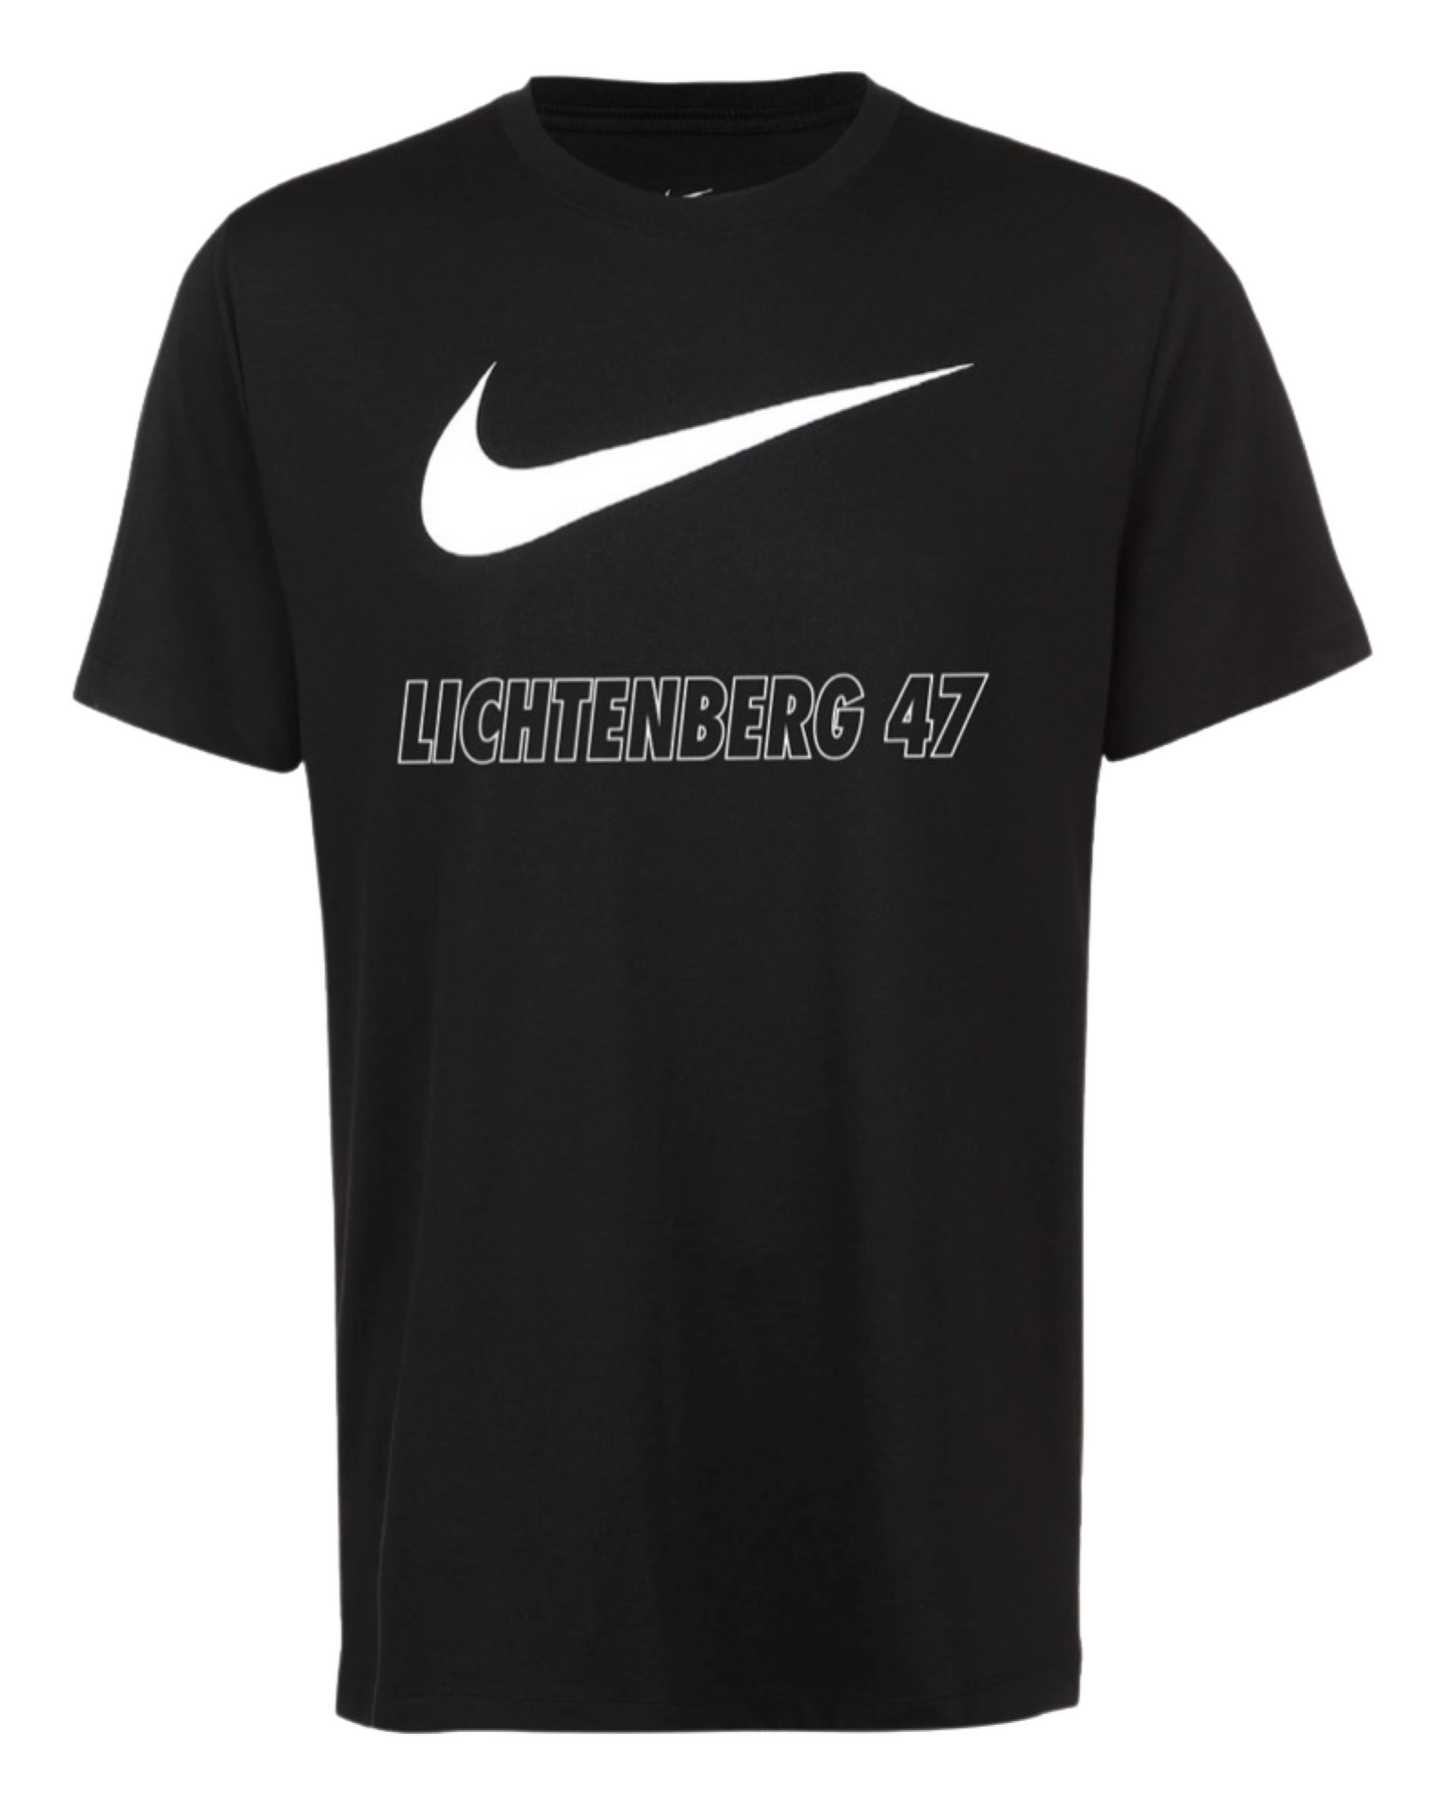 Nike 47er T-Shirt Schwarz - Lichtenberg 47